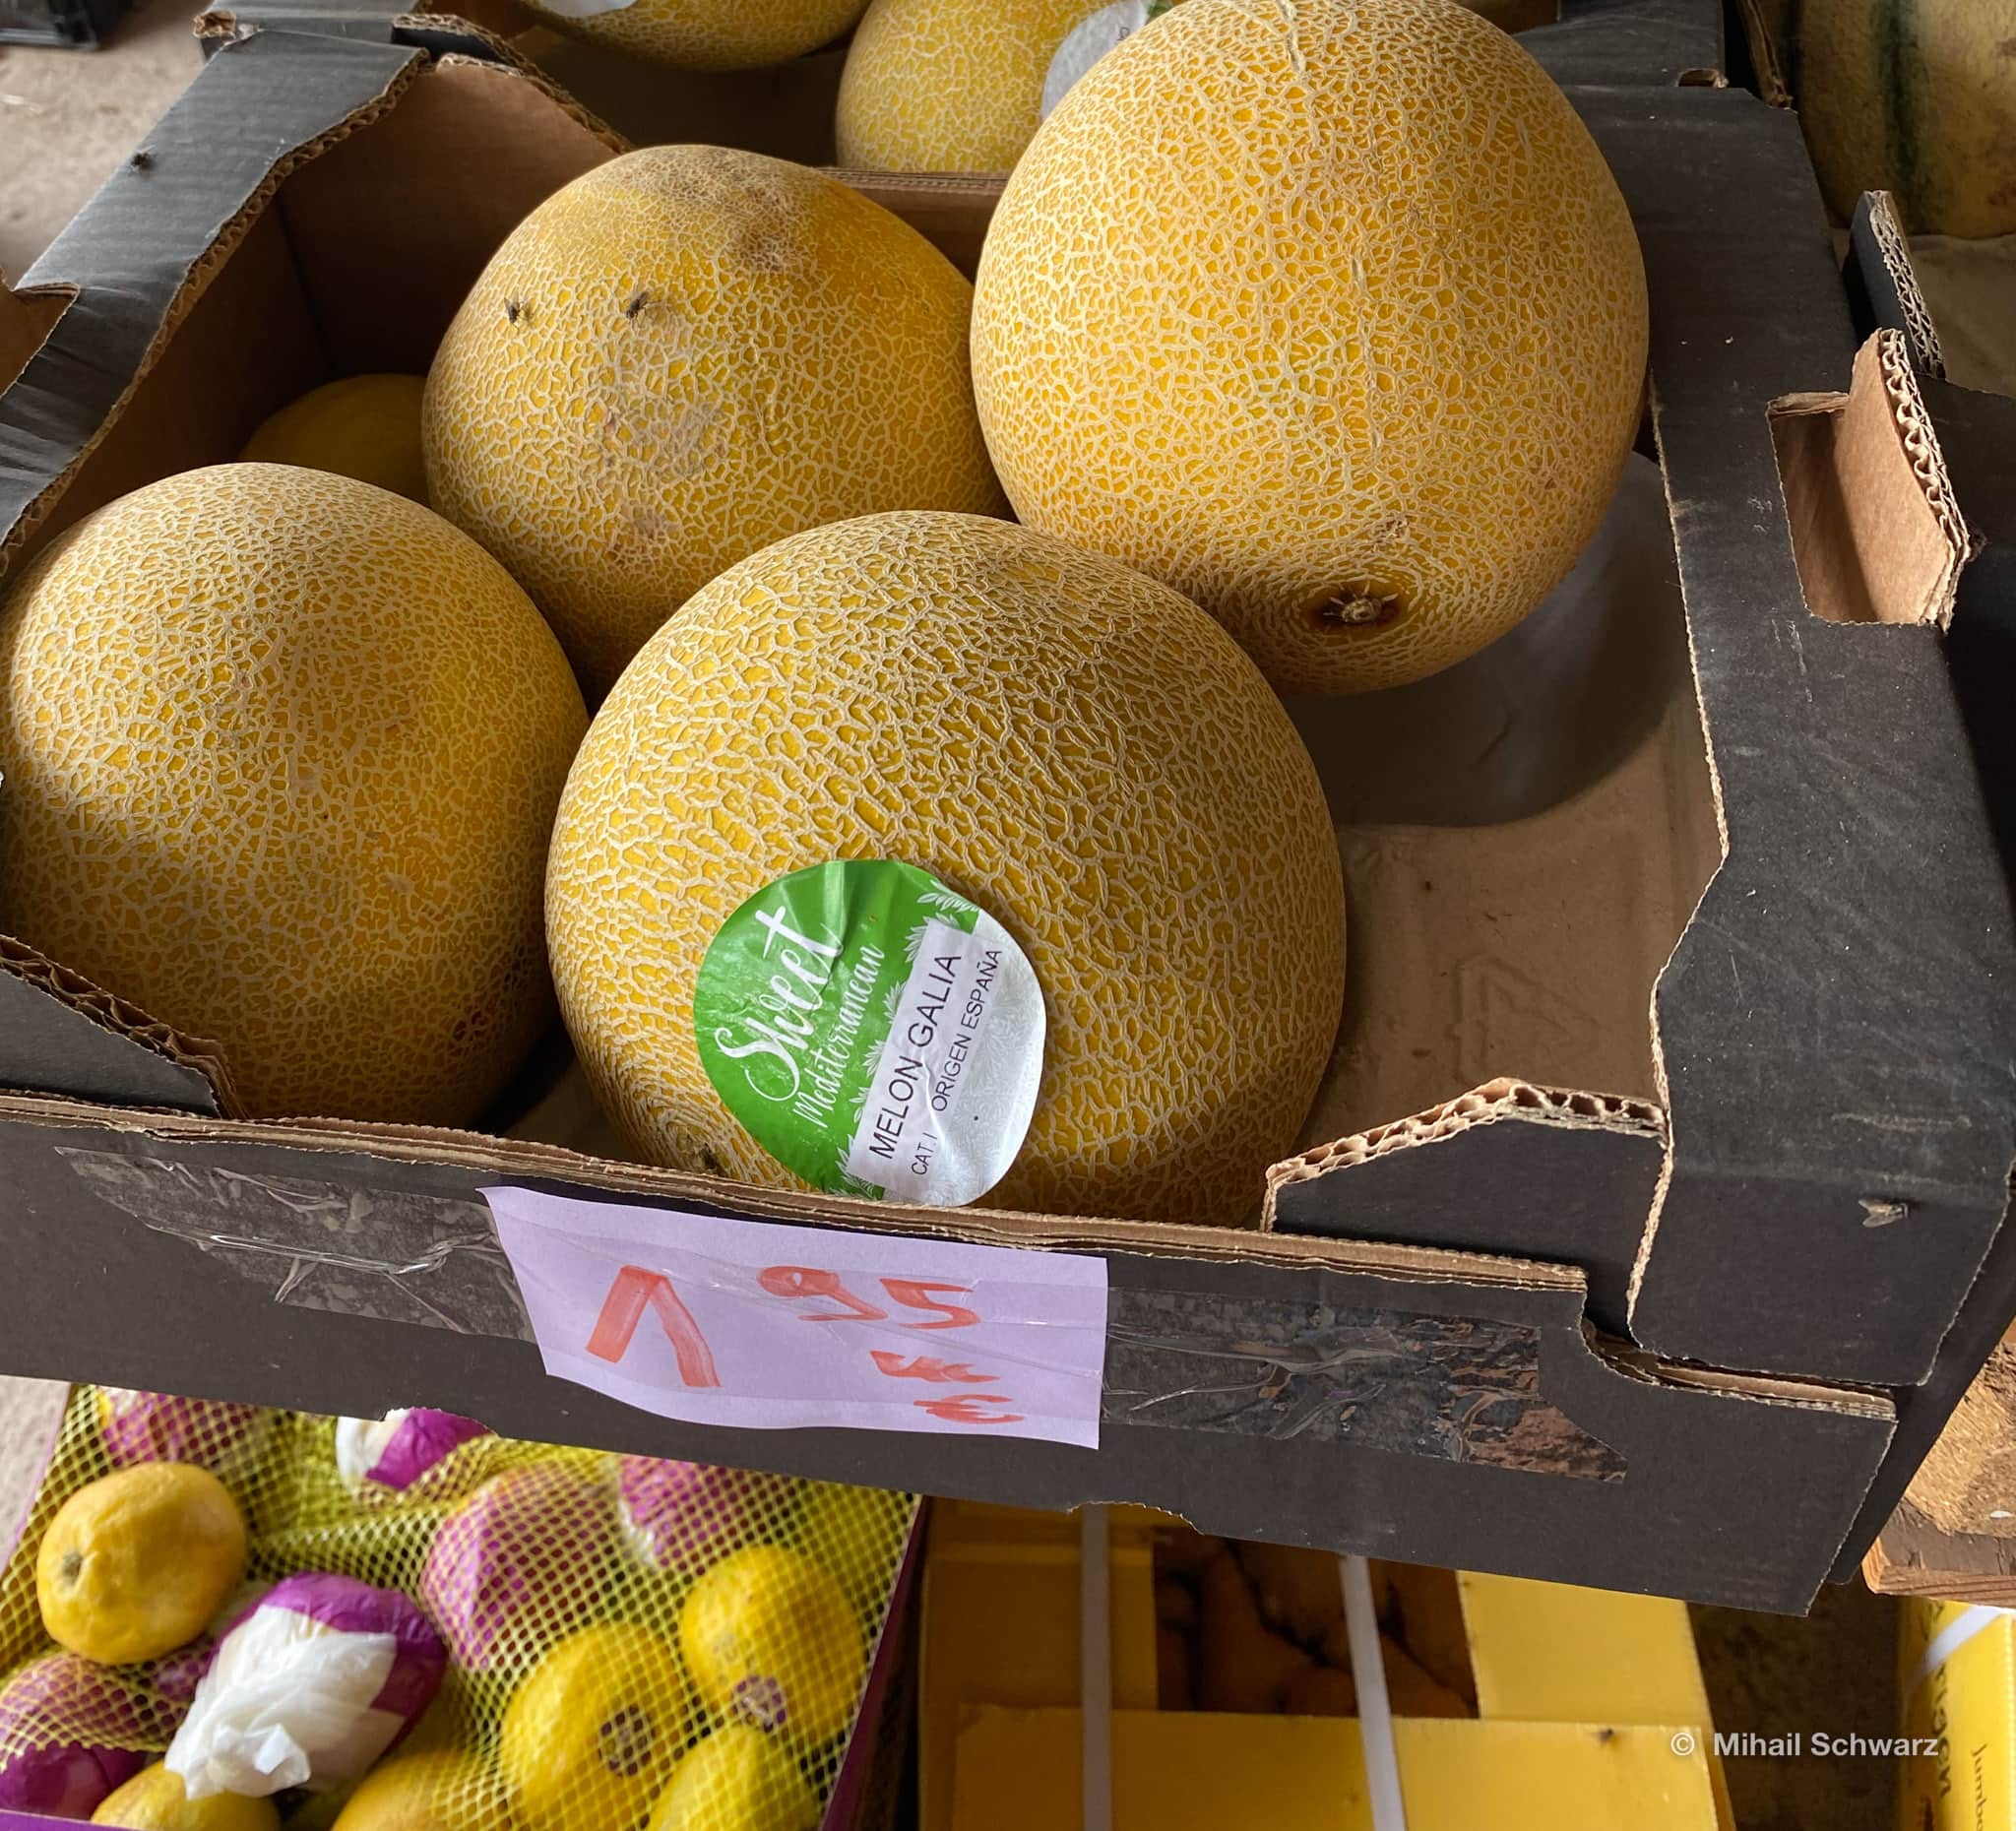 Купить фруктовые недорого. Самые дешевые фрукты. Цены в Испании на продукты 2023. Где фрукты и овощи дешевле. Где купить дешевле фрукты в Москве.